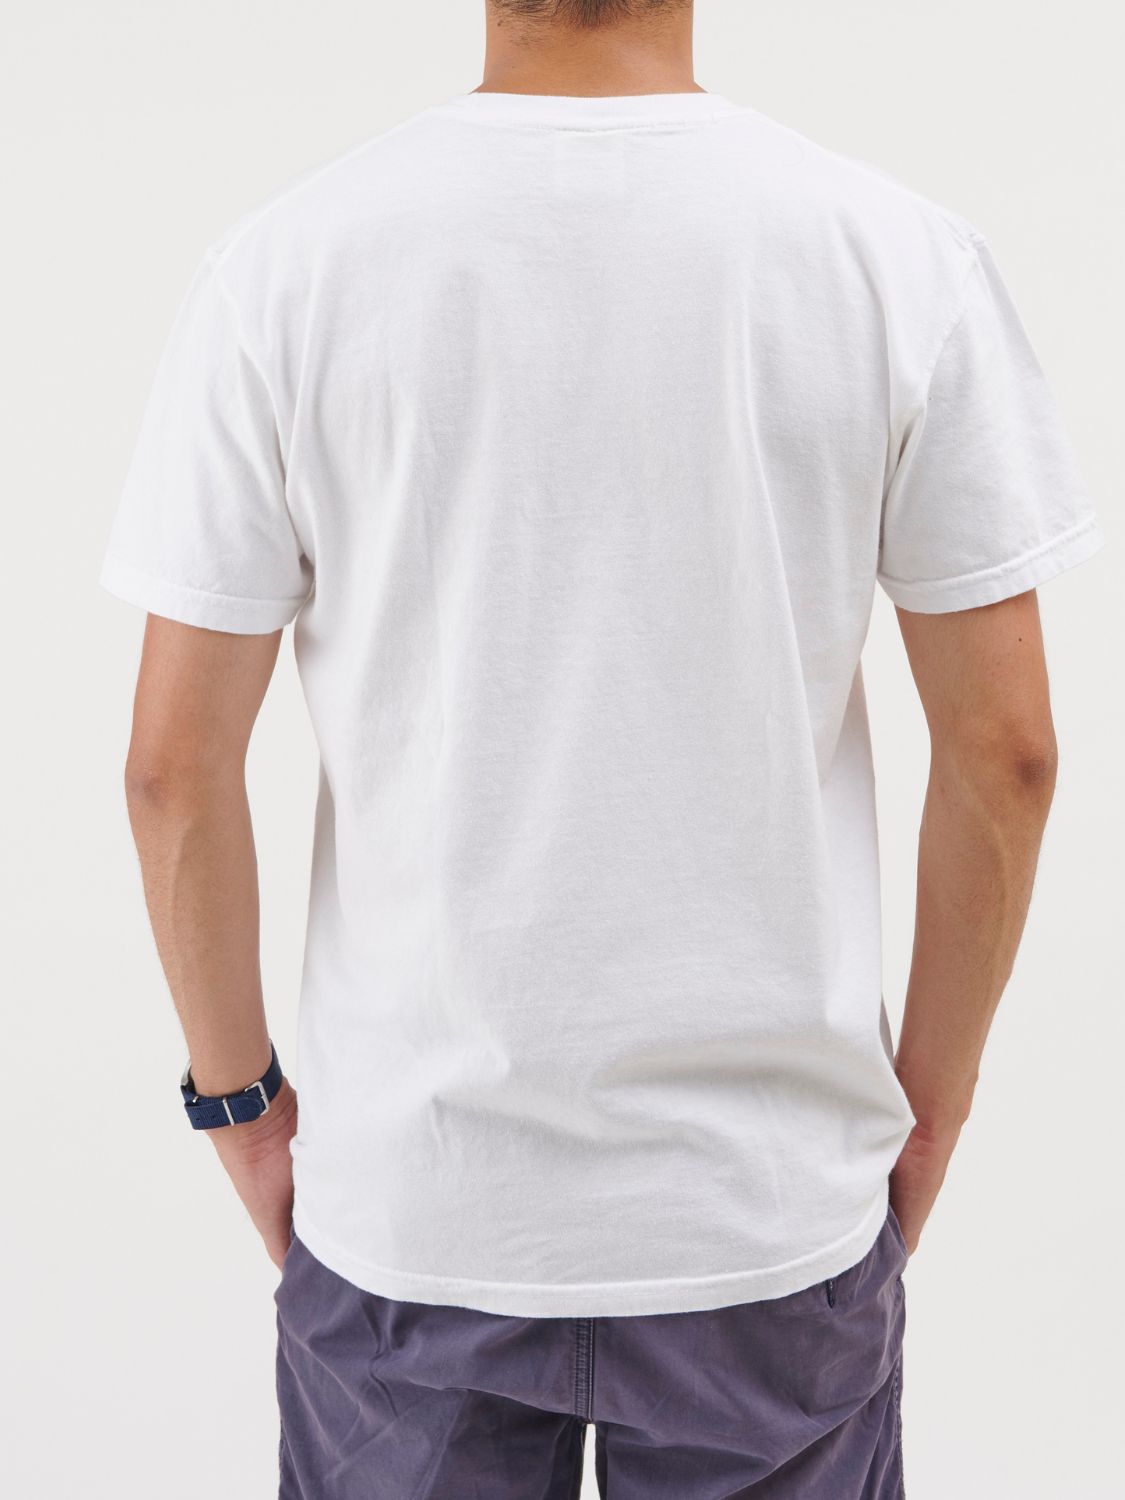 SOBA UNIV. Tshirt / ホワイト